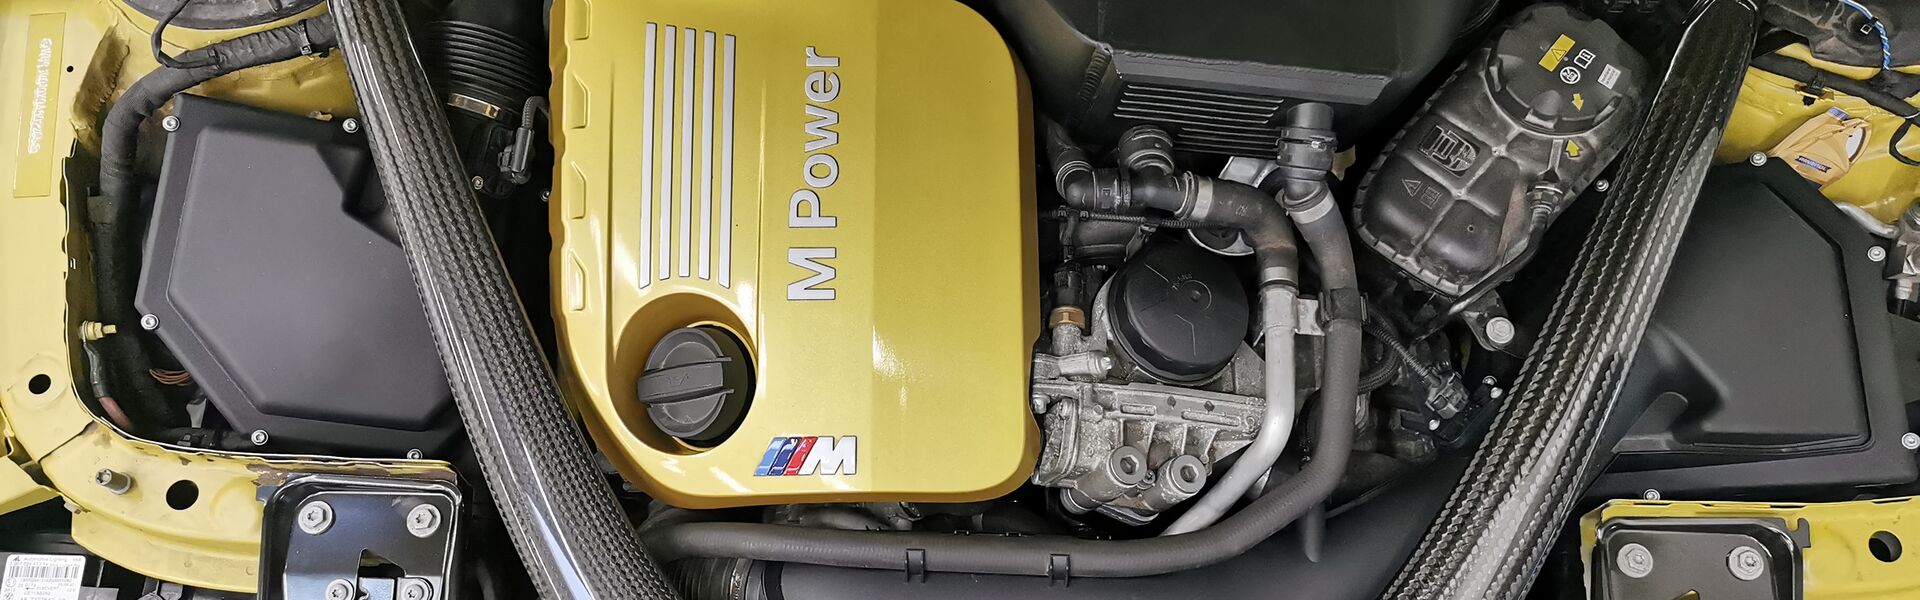 Engine Porsche 911 Turbo 997